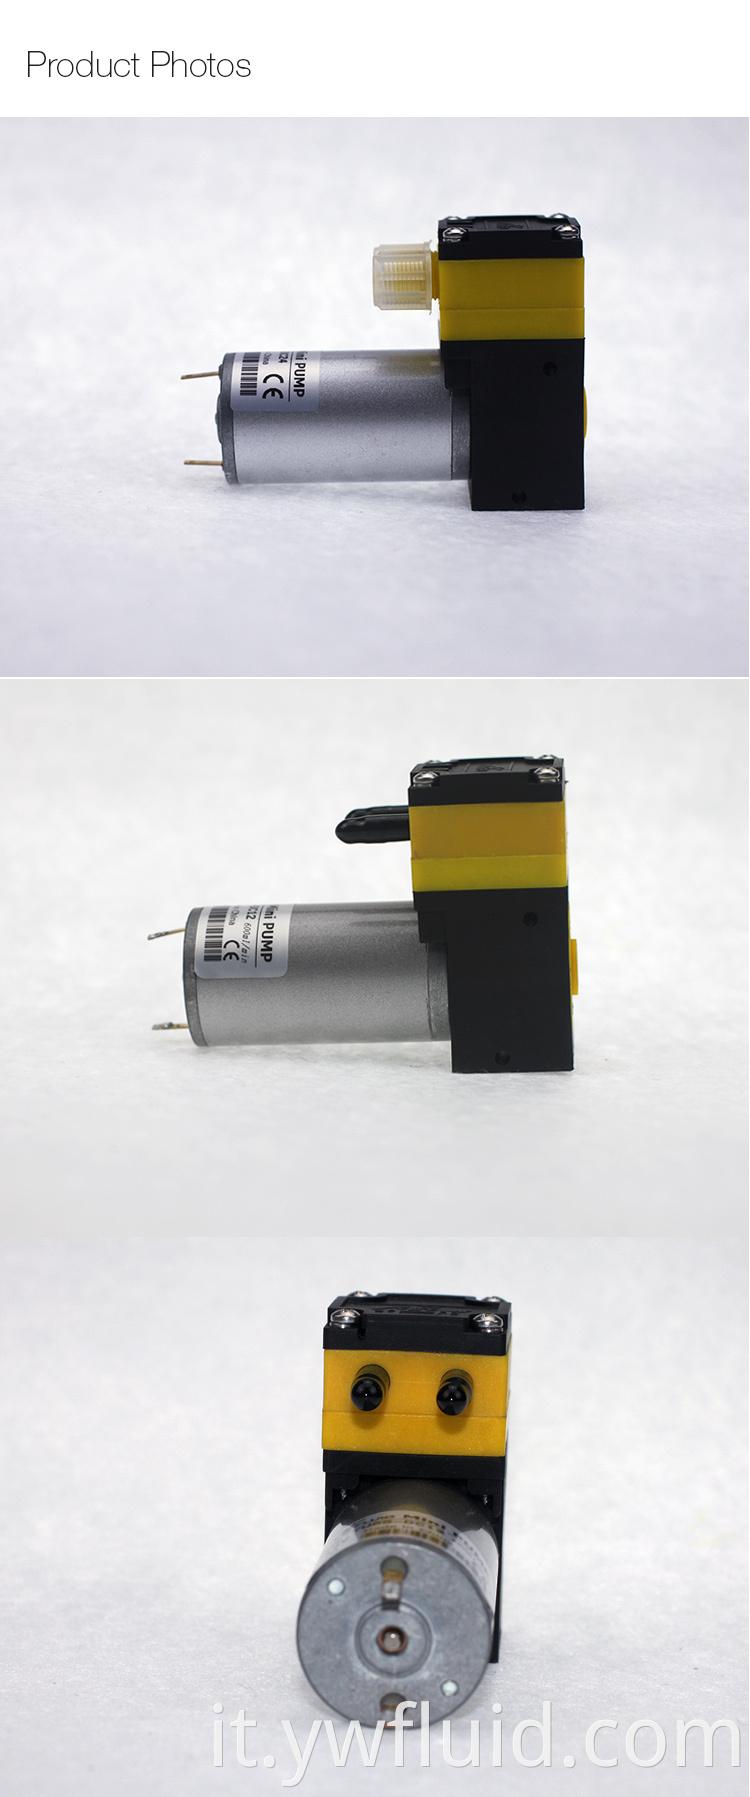 Micro pompa a membrana YWfluid 12V 24V per gonfiabile con portata d'aria 3L/min utilizzata per il confezionamento sottovuoto